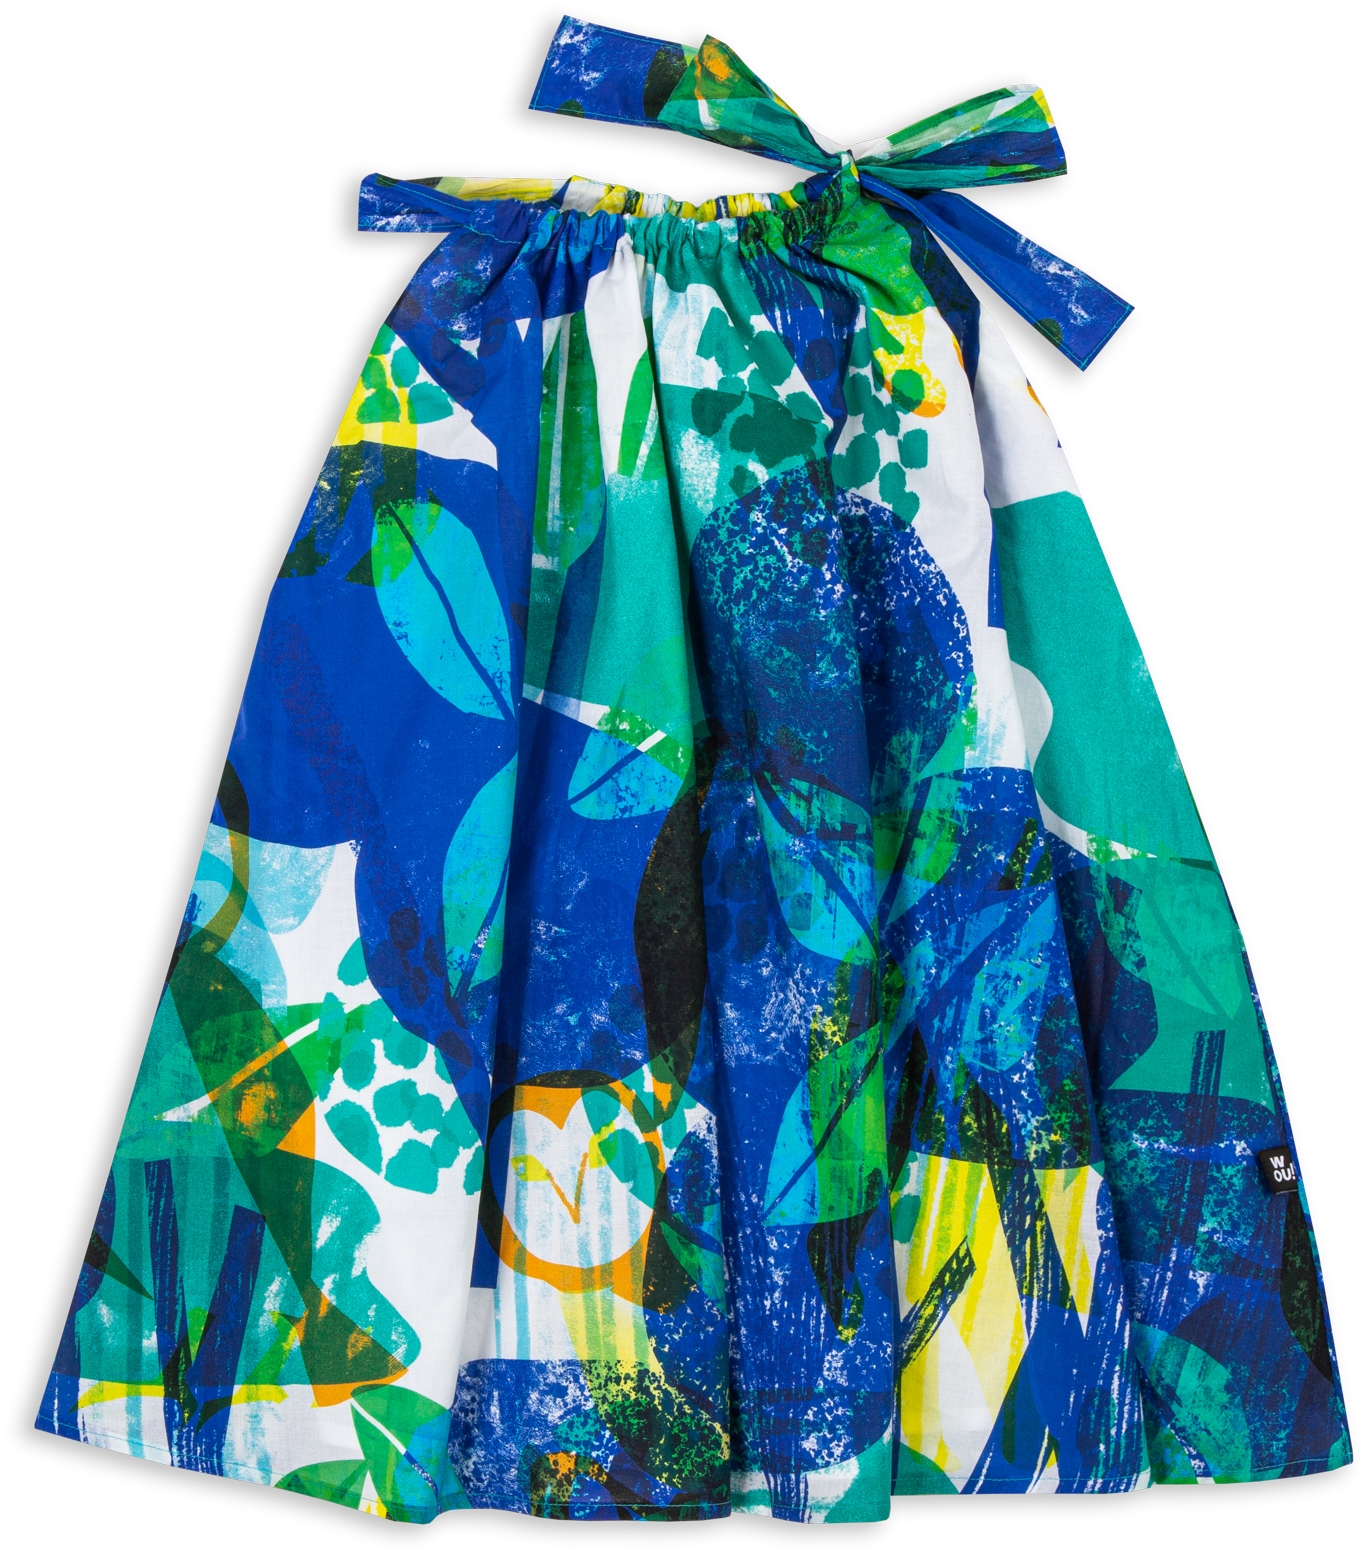 Dívčí šaty Wouki Komori - blue forest 140